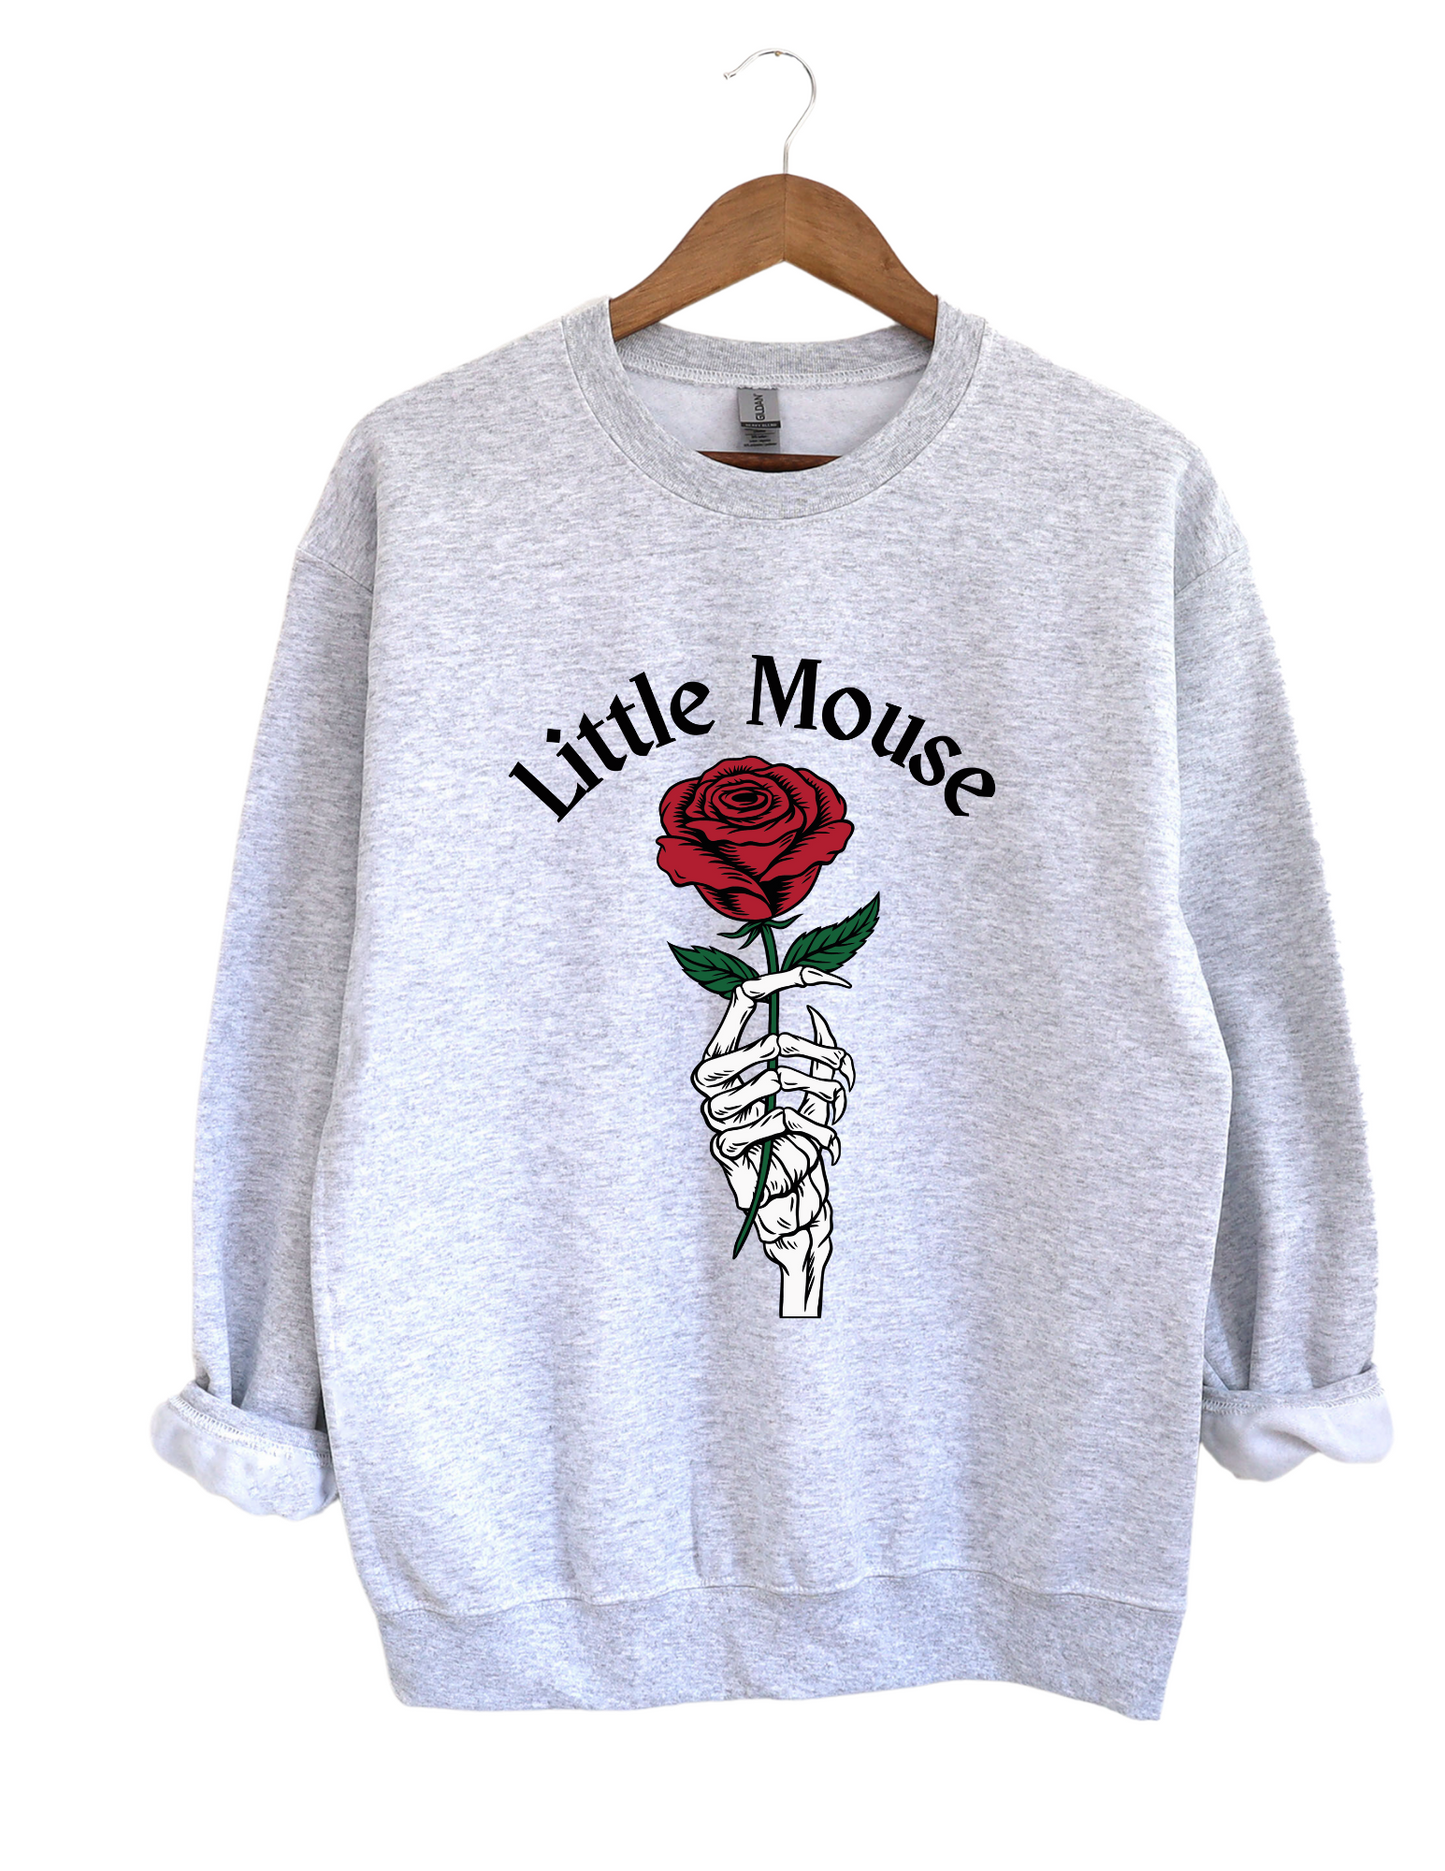 Little Mouse Sweatshirt